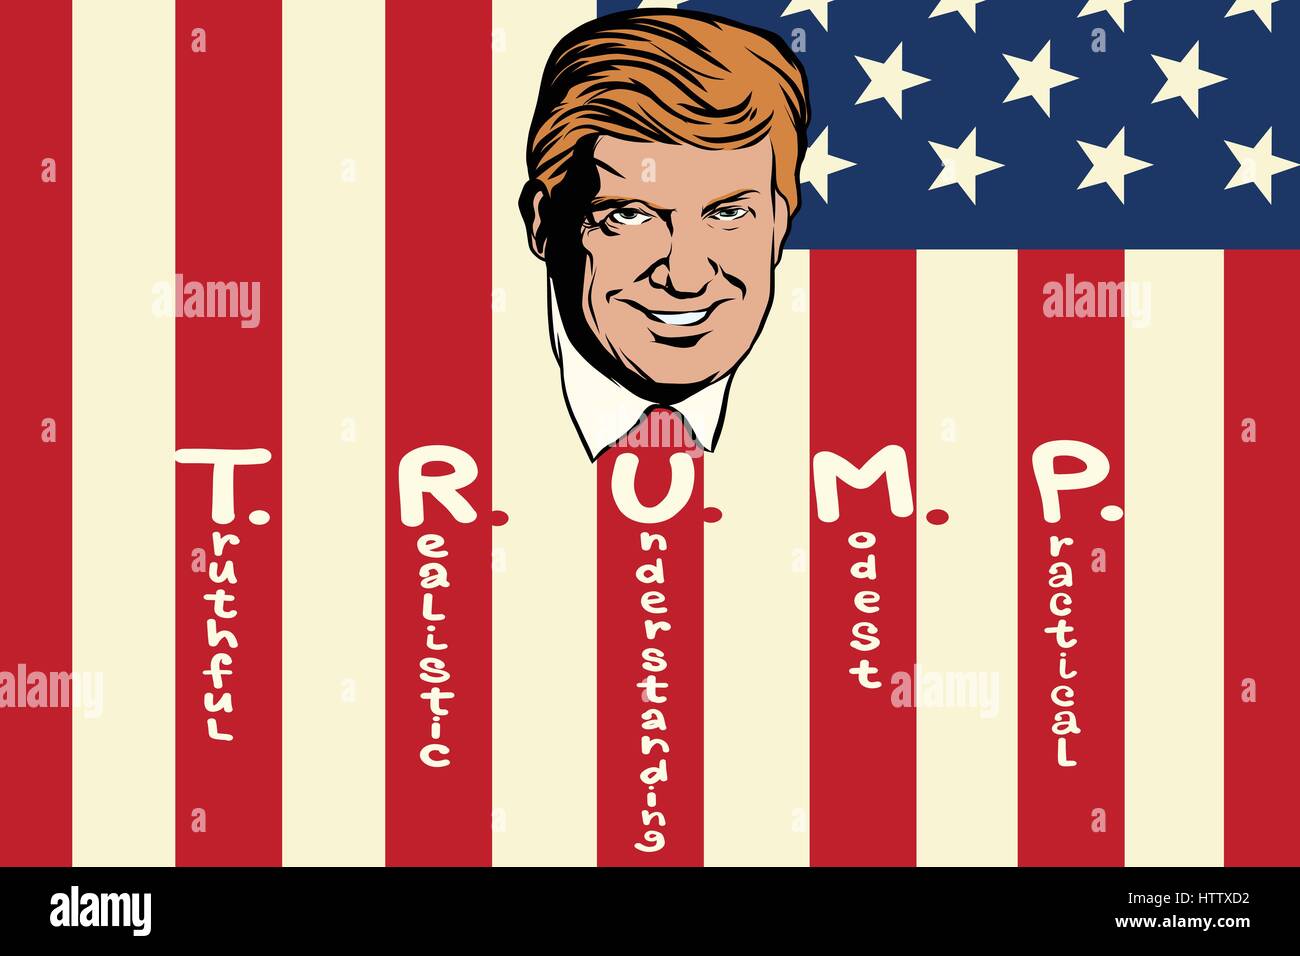 Donald Trump Präsident der Vereinigten Staaten. Wahrheitsgemäße realistisches Verständnis bescheiden praktisch. Retro Comic Buch Style Pop Art Retro-Abbildung colo Stock Vektor